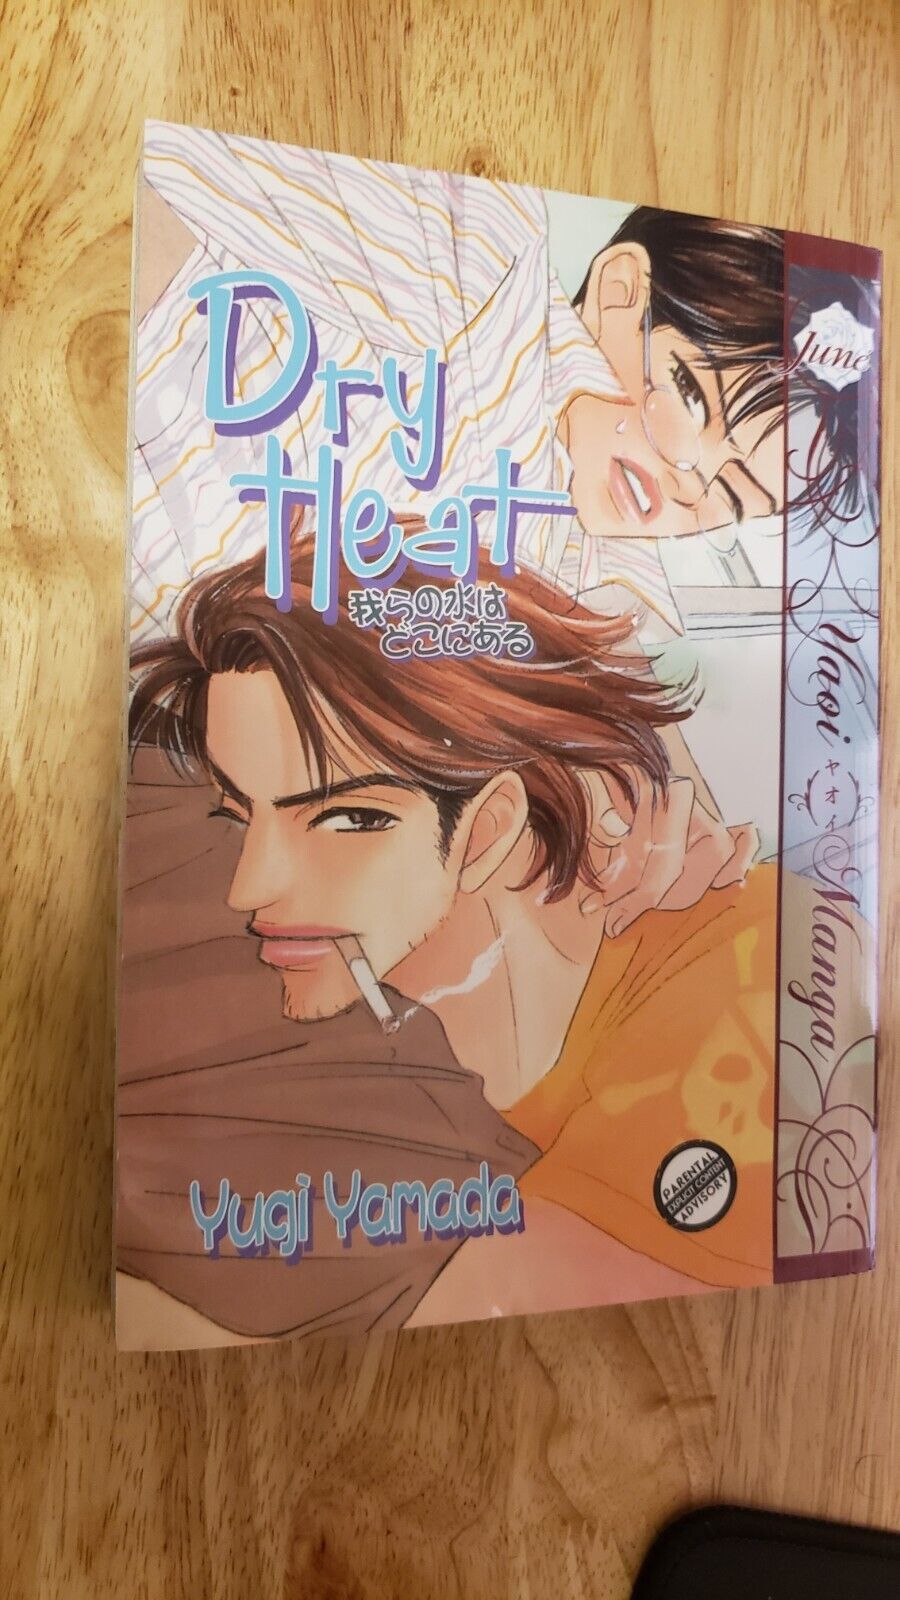 Dry Heat by Yugi Yamada (2010) rare oop AC Manga graphic novel